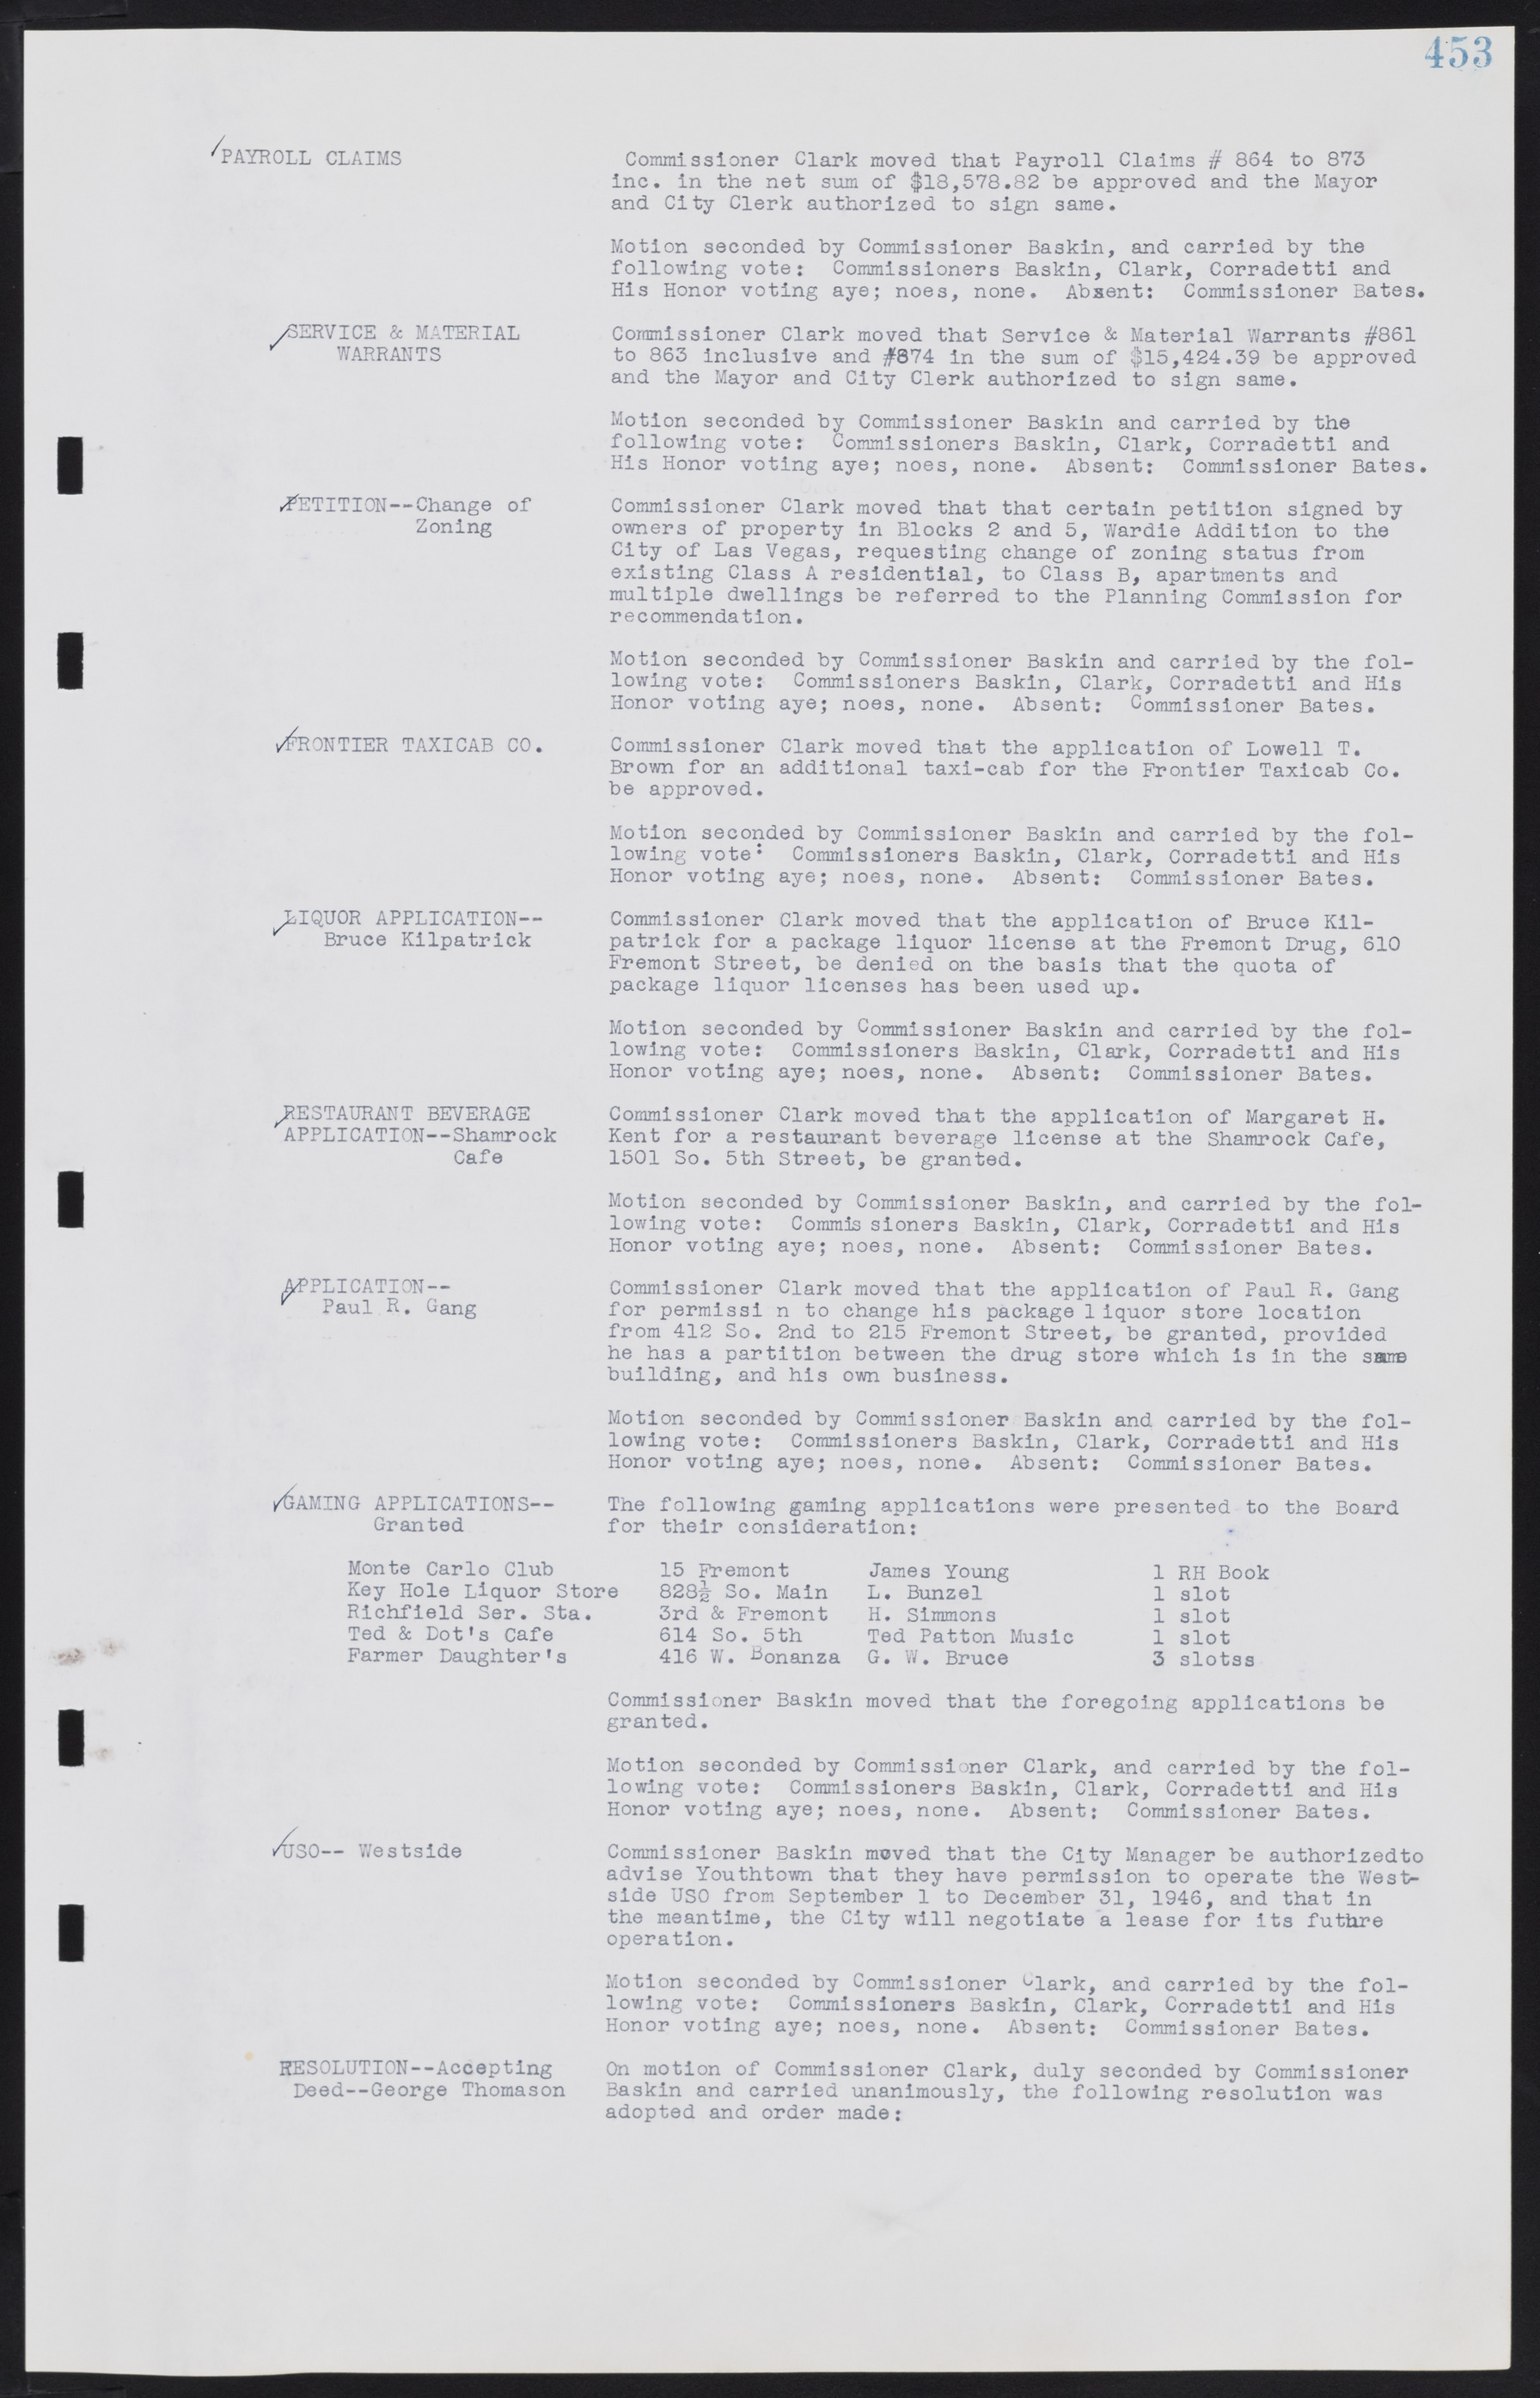 Las Vegas City Commission Minutes, August 11, 1942 to December 30, 1946, lvc000005-484